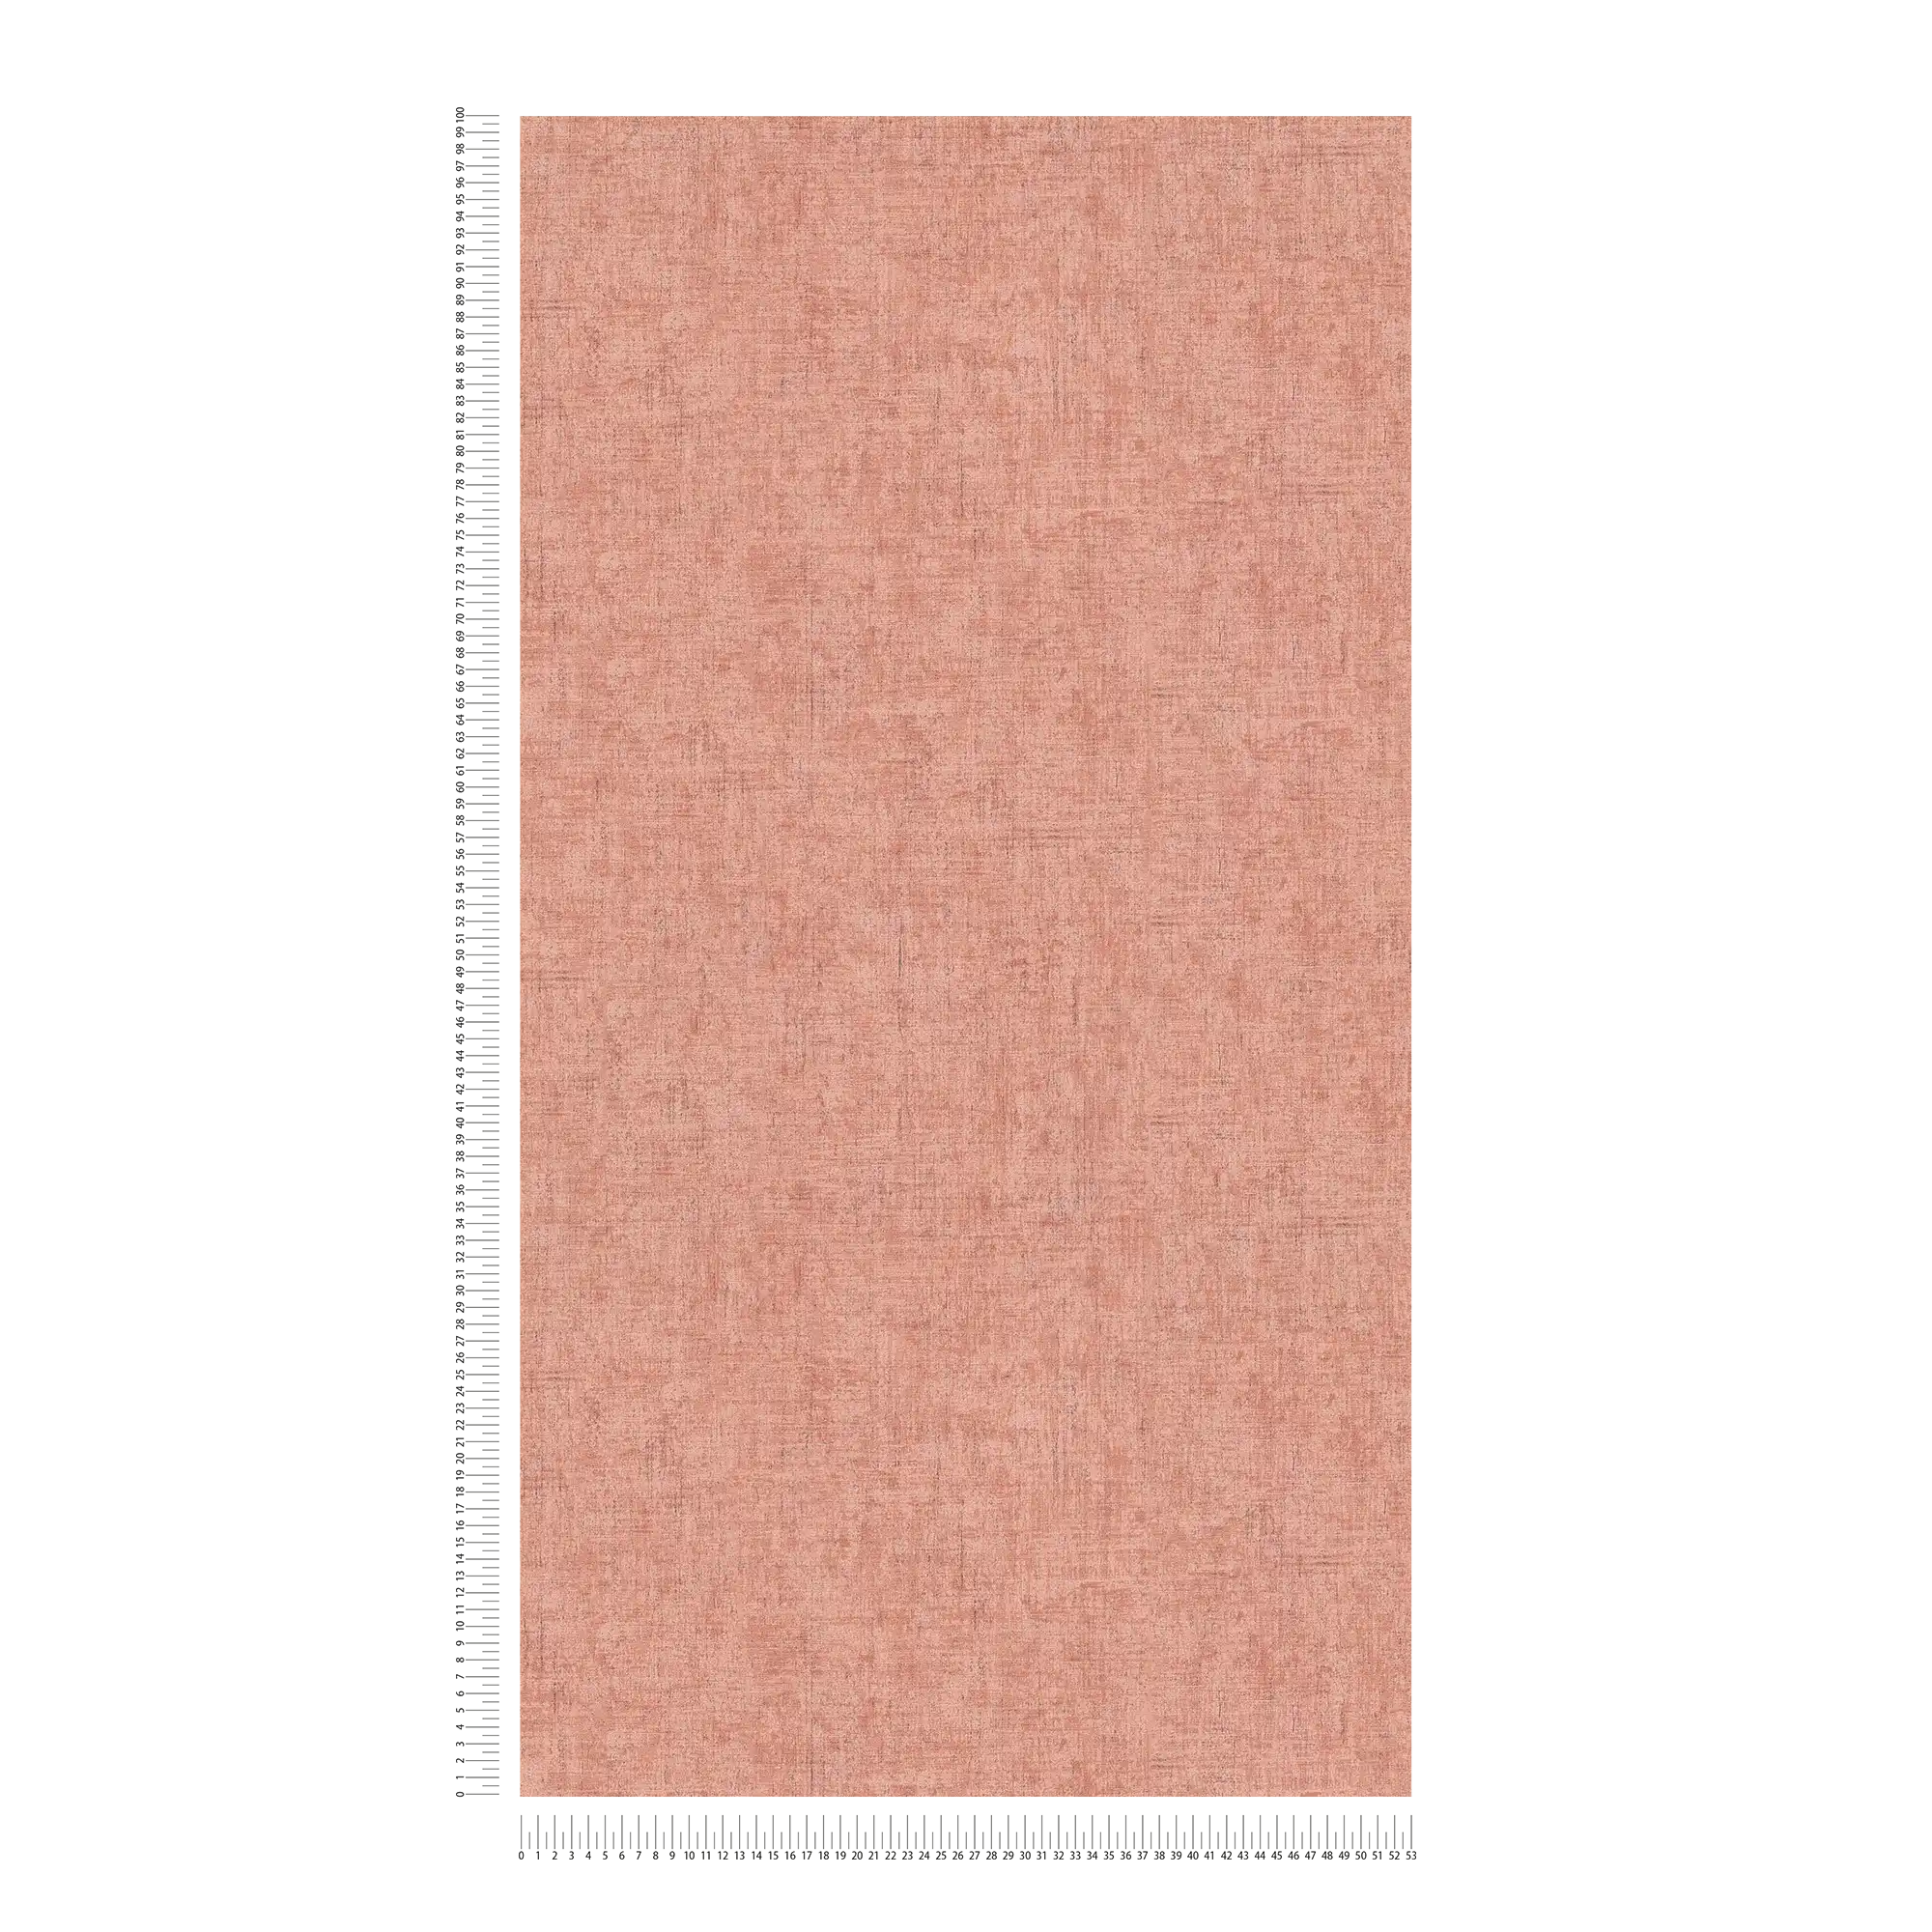             Papel pintado no tejido rosa-gris moteado con sombreado de color y textura en relieve
        